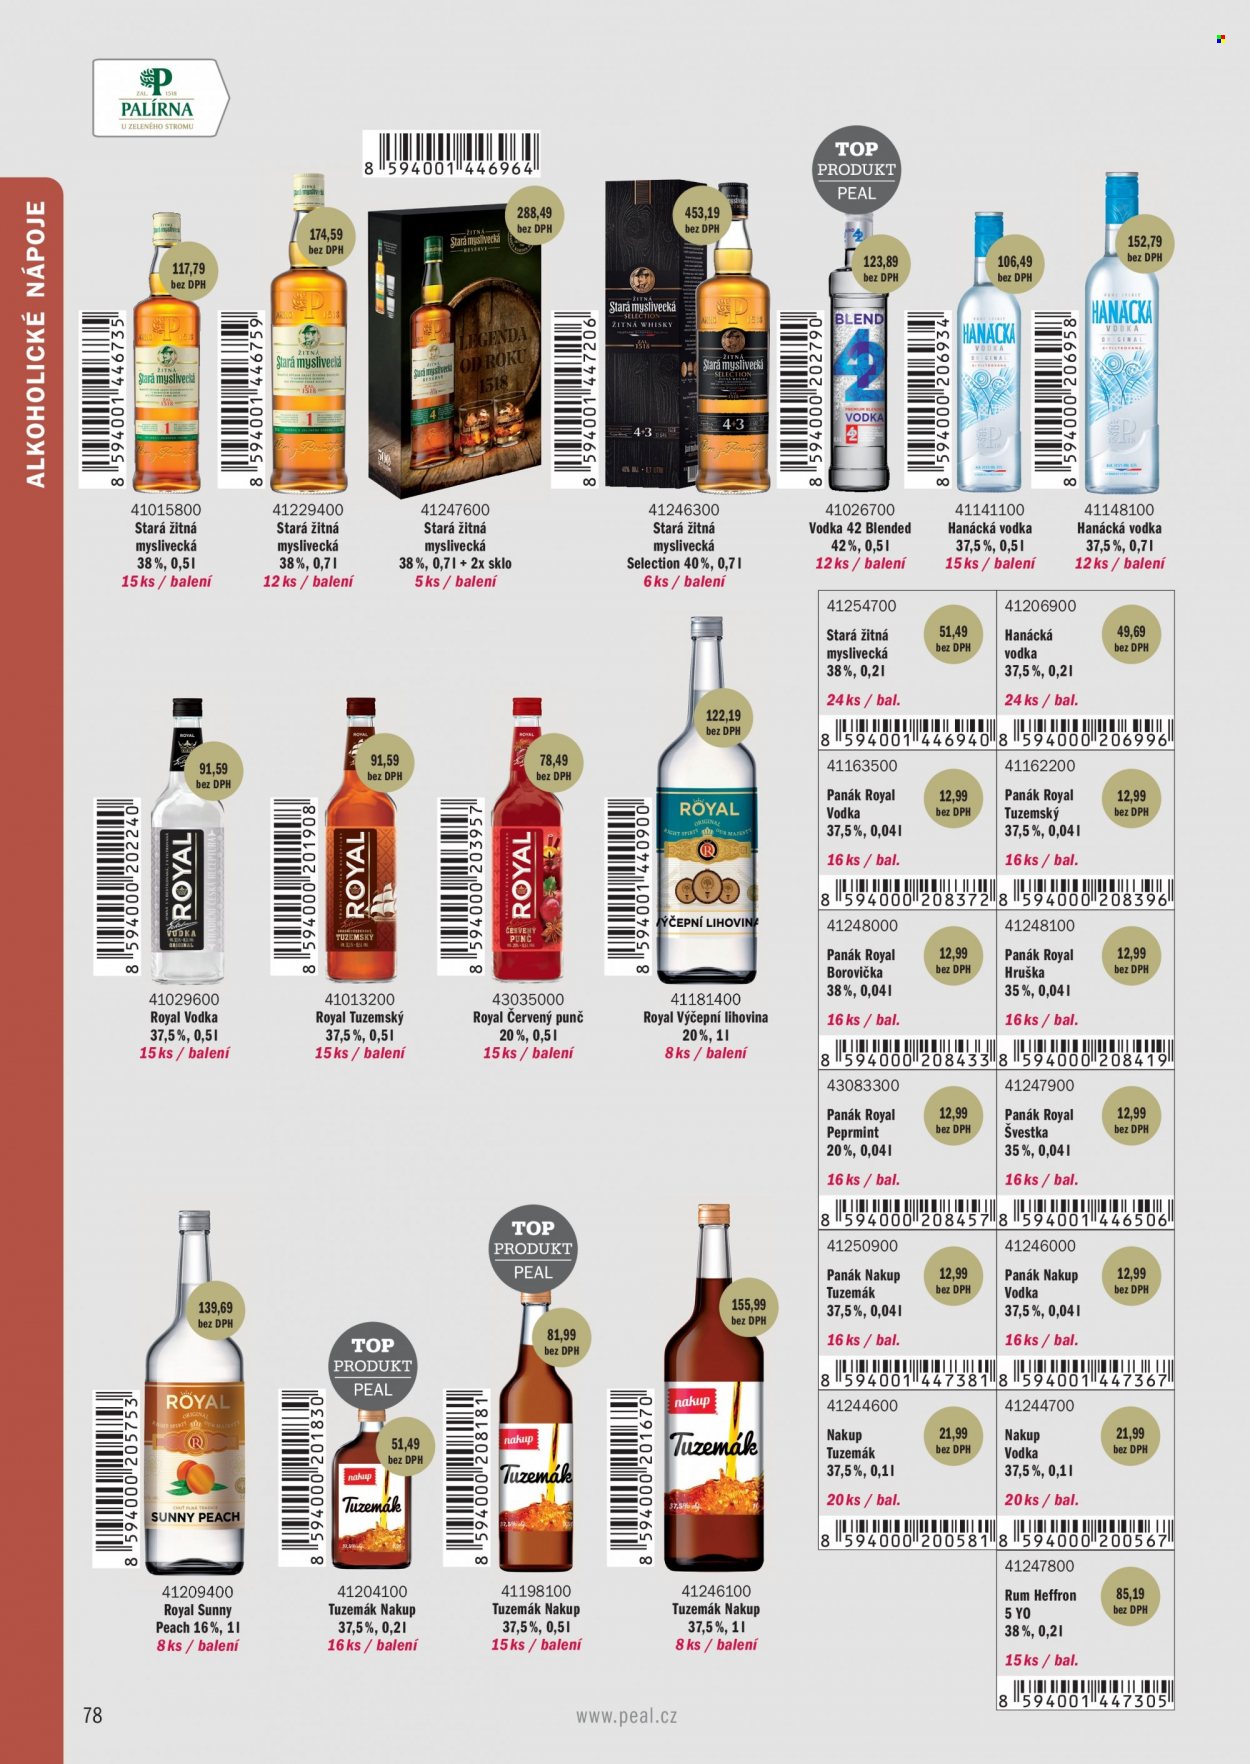 Leták PEAL - Produkty v akci - punč, alkohol, Stará Myslivecká, vodka, rum, Tuzemák, whisky, borovička, Vodka 42, Hanácká vodka, peprmintový likér, Heffron, Royal. Strana 36.